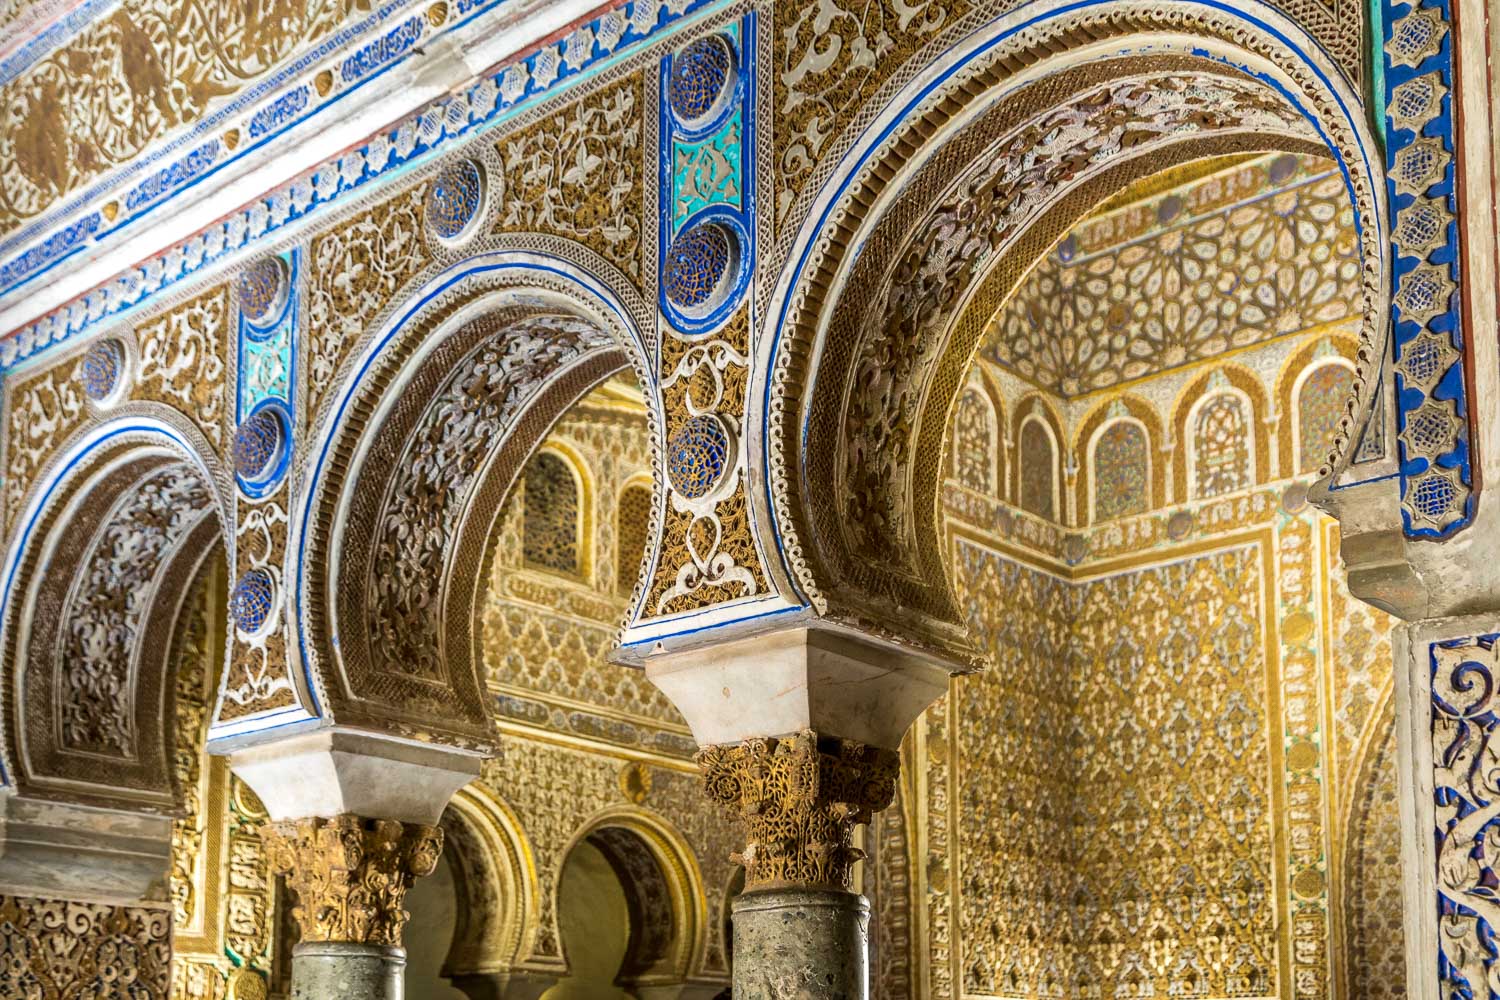 Royal Alcázar, Seville